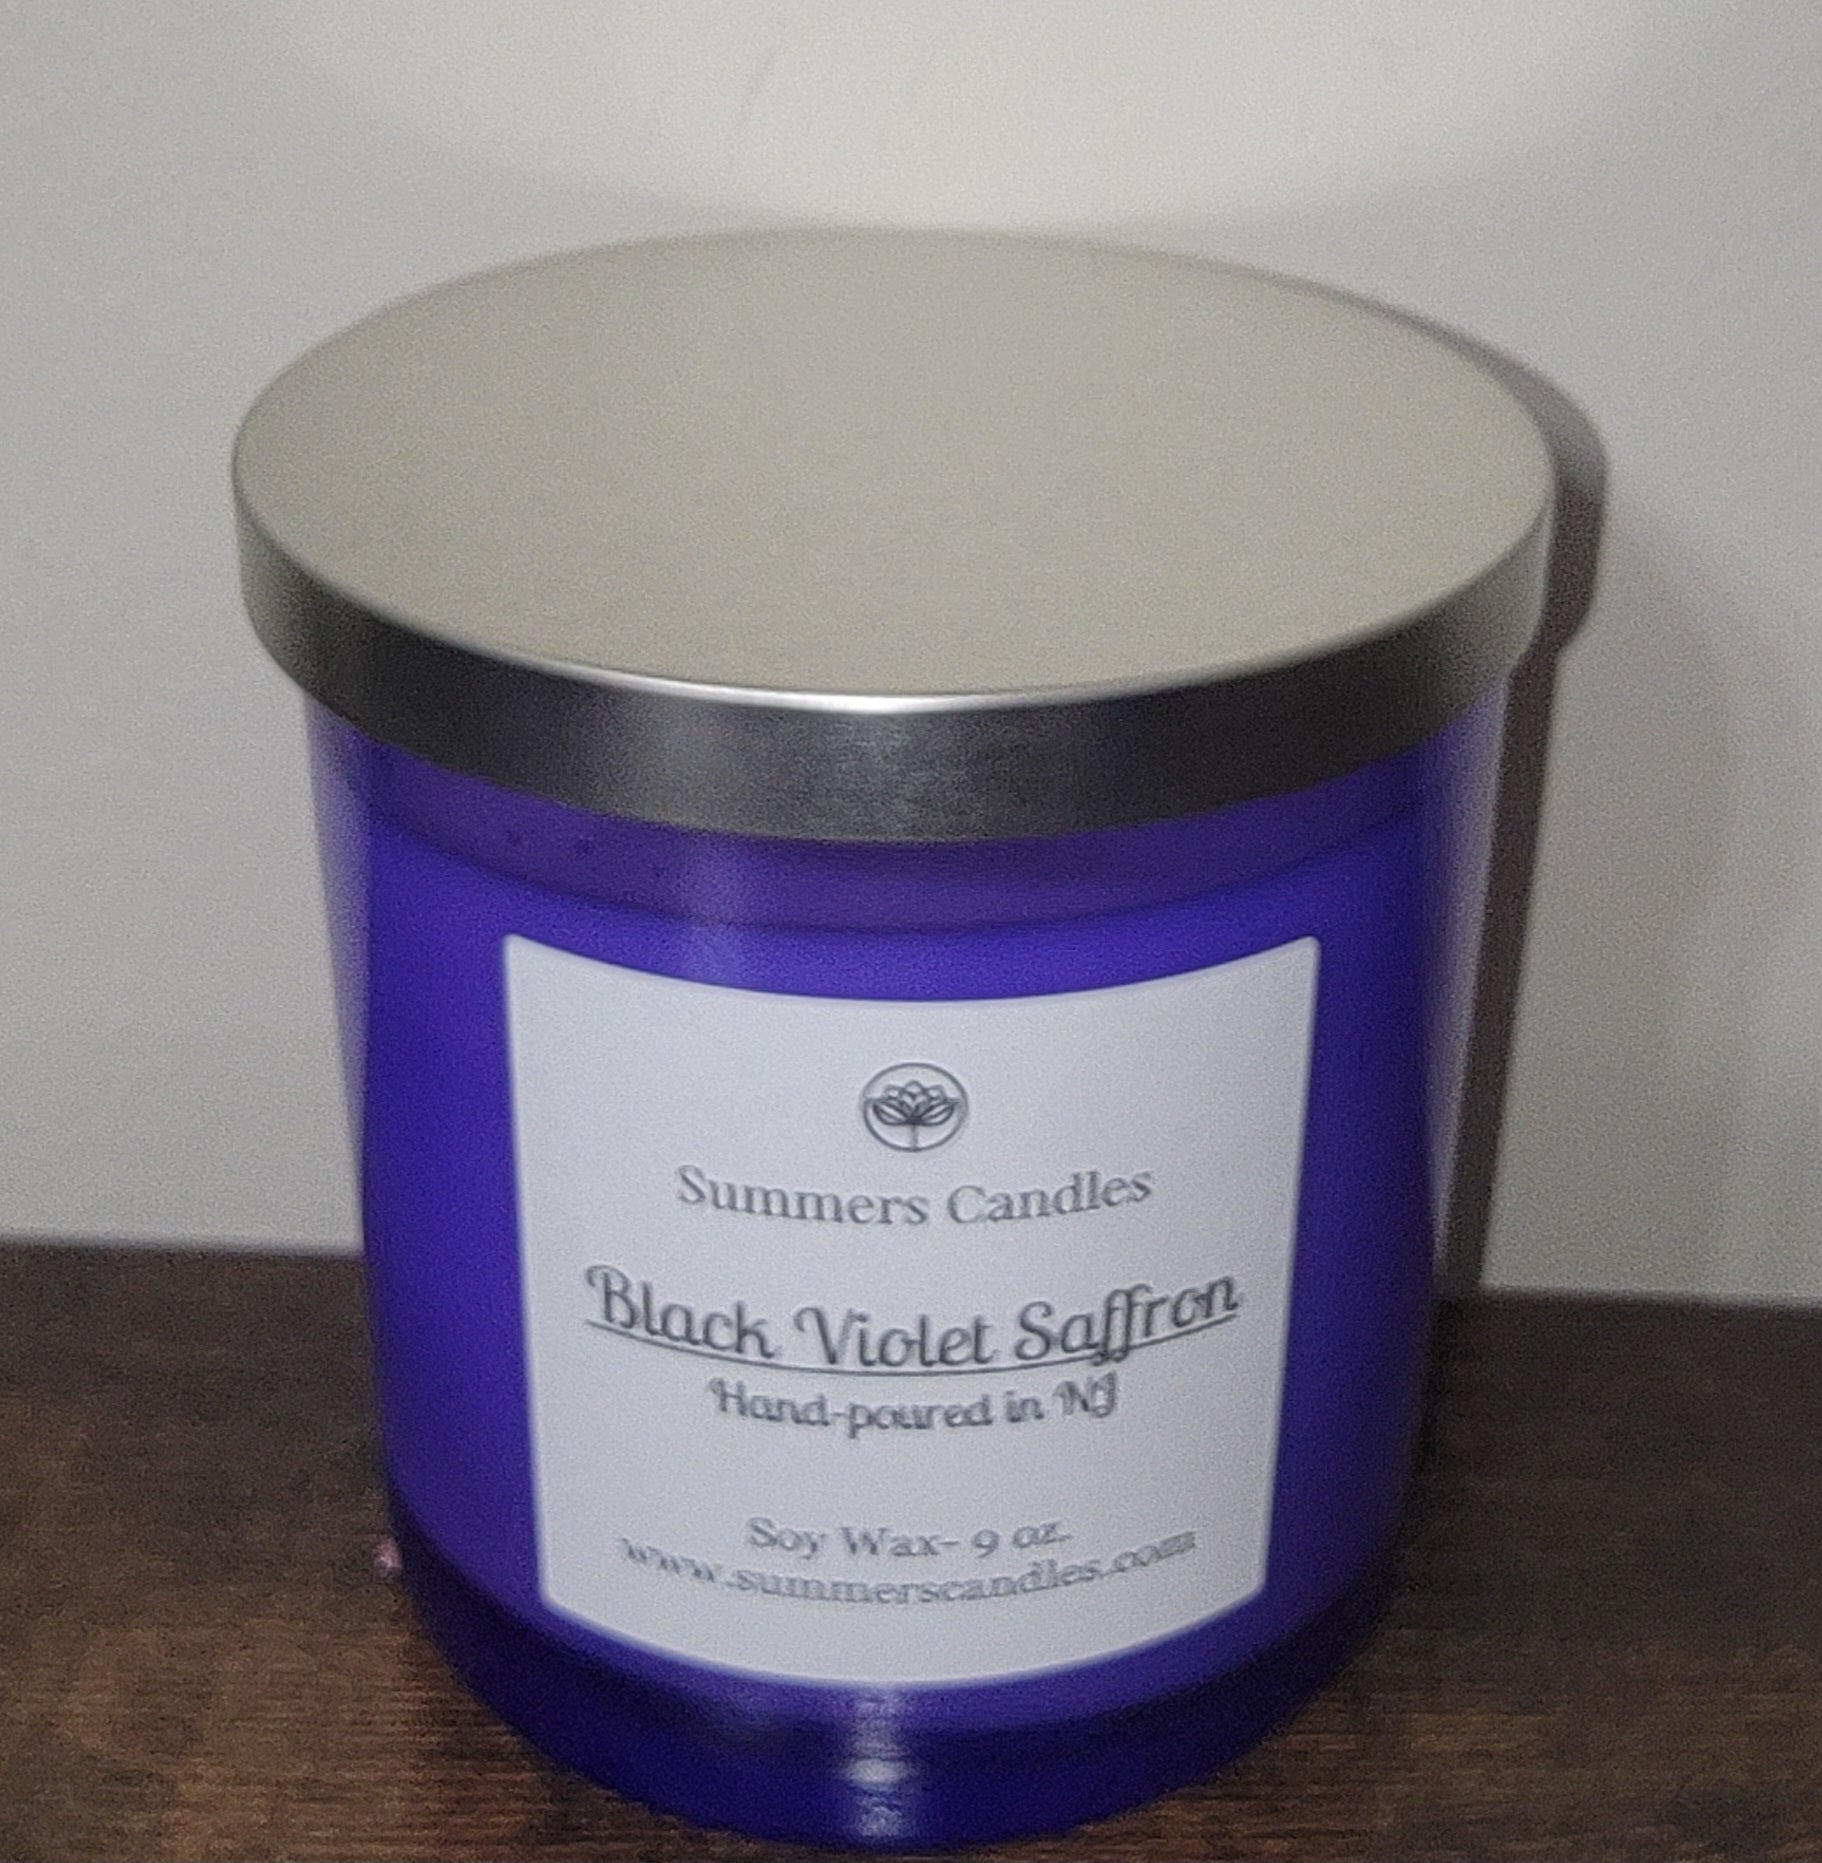 Black Violet Saffron- Summers Candles 